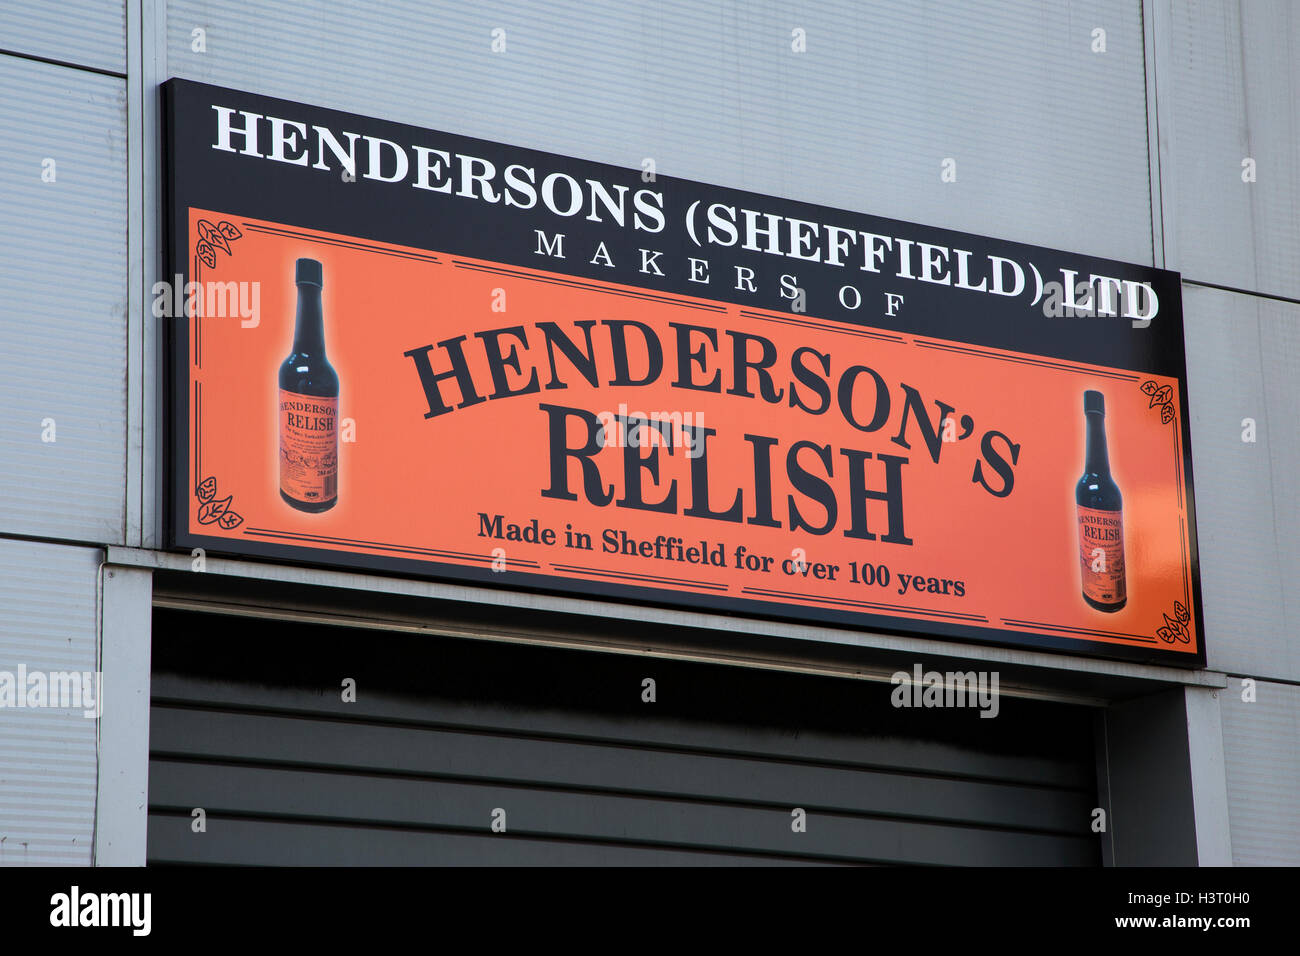 Hendersons saborear un condimento similar a Worcester Salsa relish ha sido producida en Sheffield, South Yorkshire desde 1885 Foto de stock